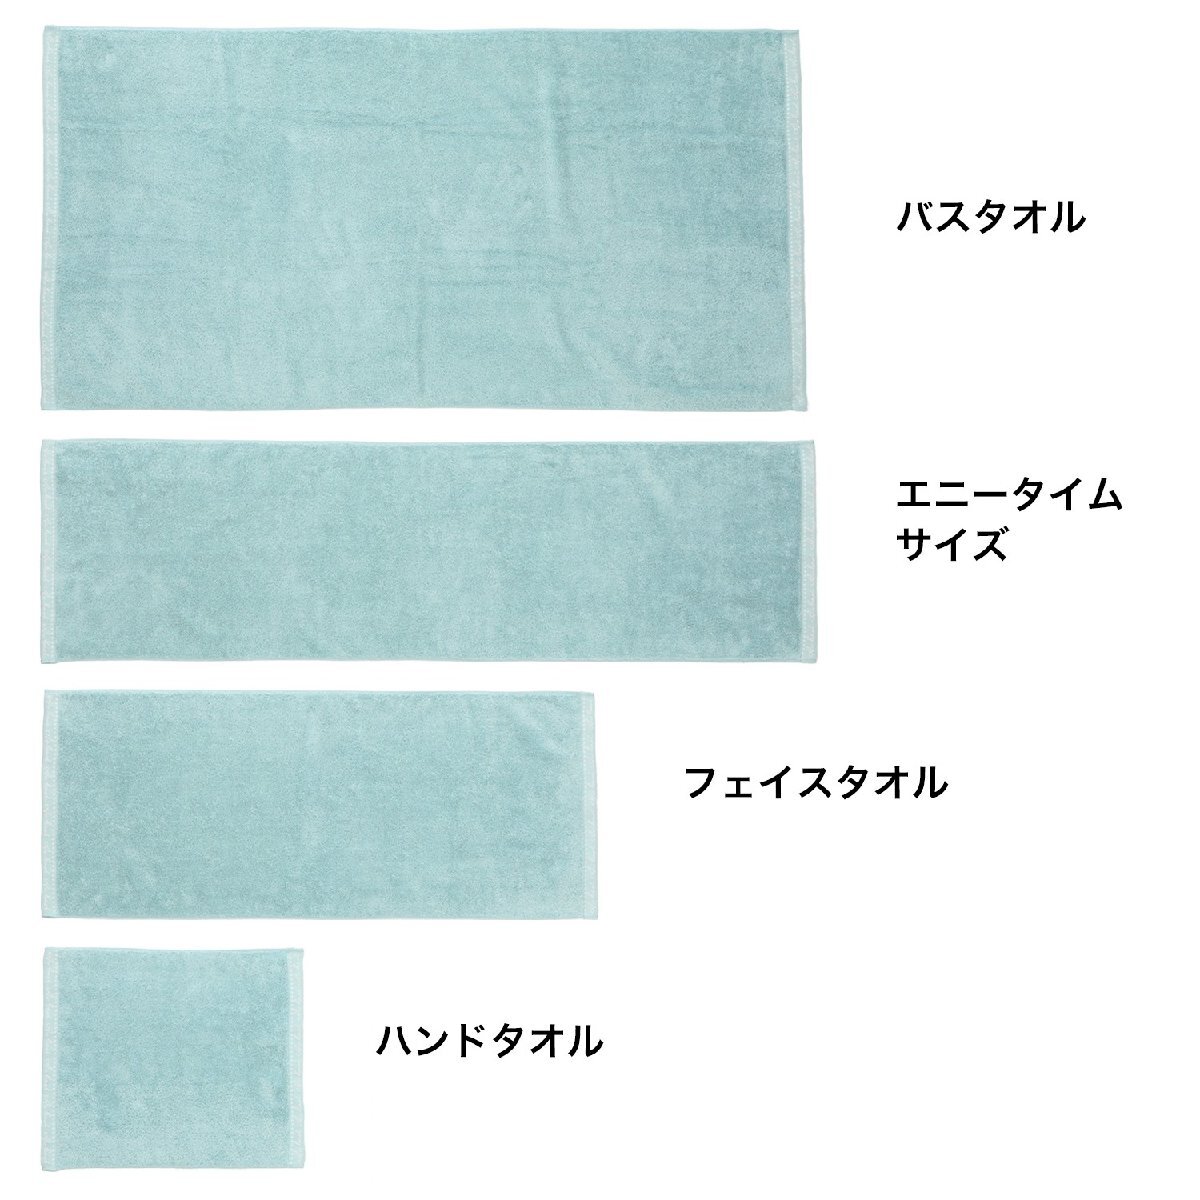 [ новый товар не использовался ] сейчас . полотенце air kaol воздушный ... органический si Star 2e колено время размер одного цвета 2 листов комплект сделано в Японии розовый [ справочная цена Y5,280-